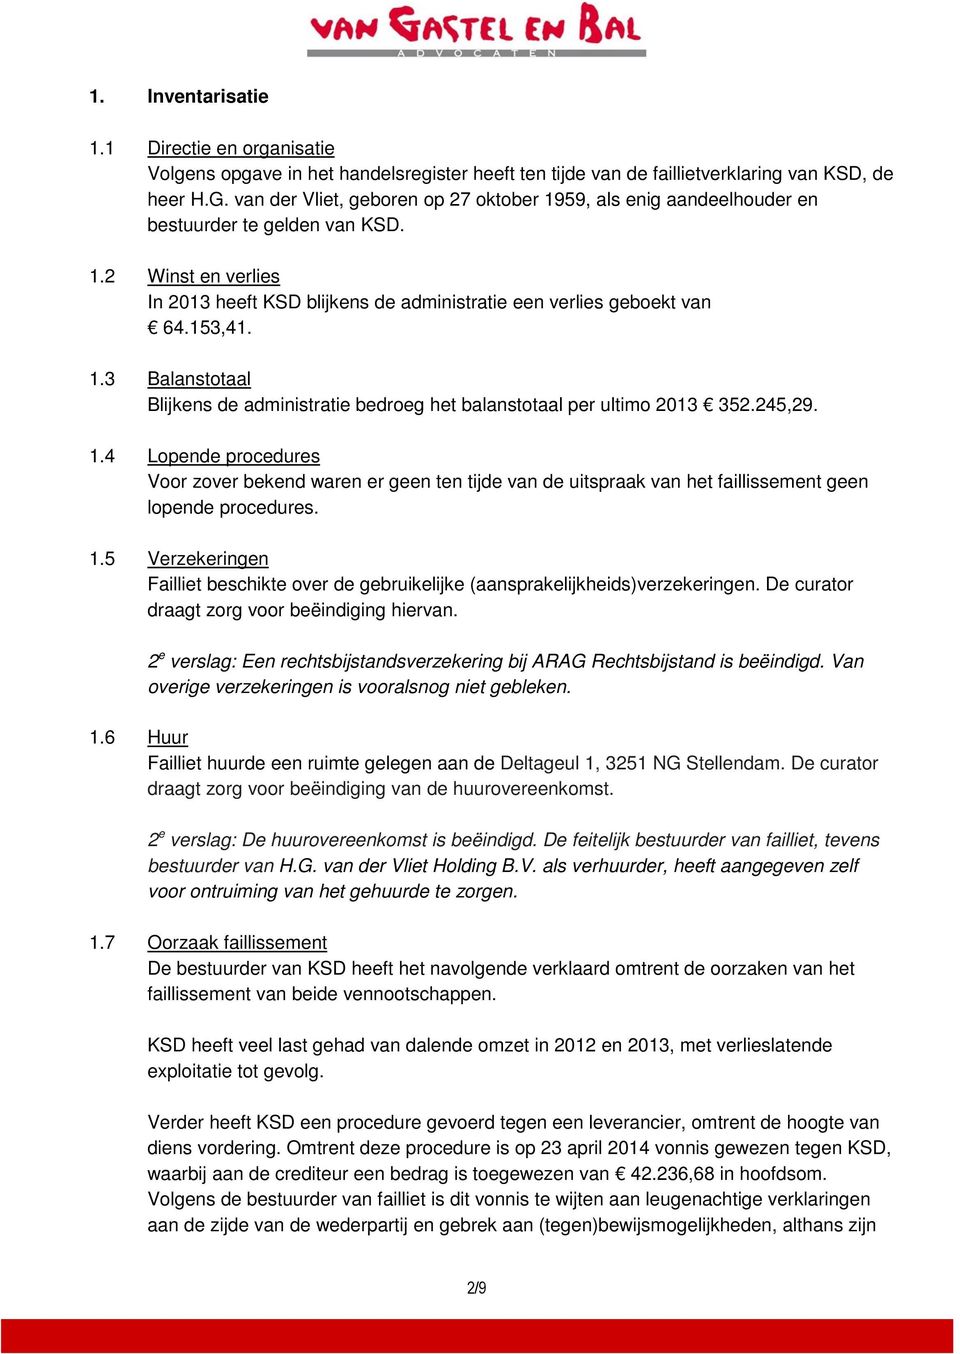 1.3 Balanstotaal Blijkens de administratie bedroeg het balanstotaal per ultimo 2013 352.245,29. 1.